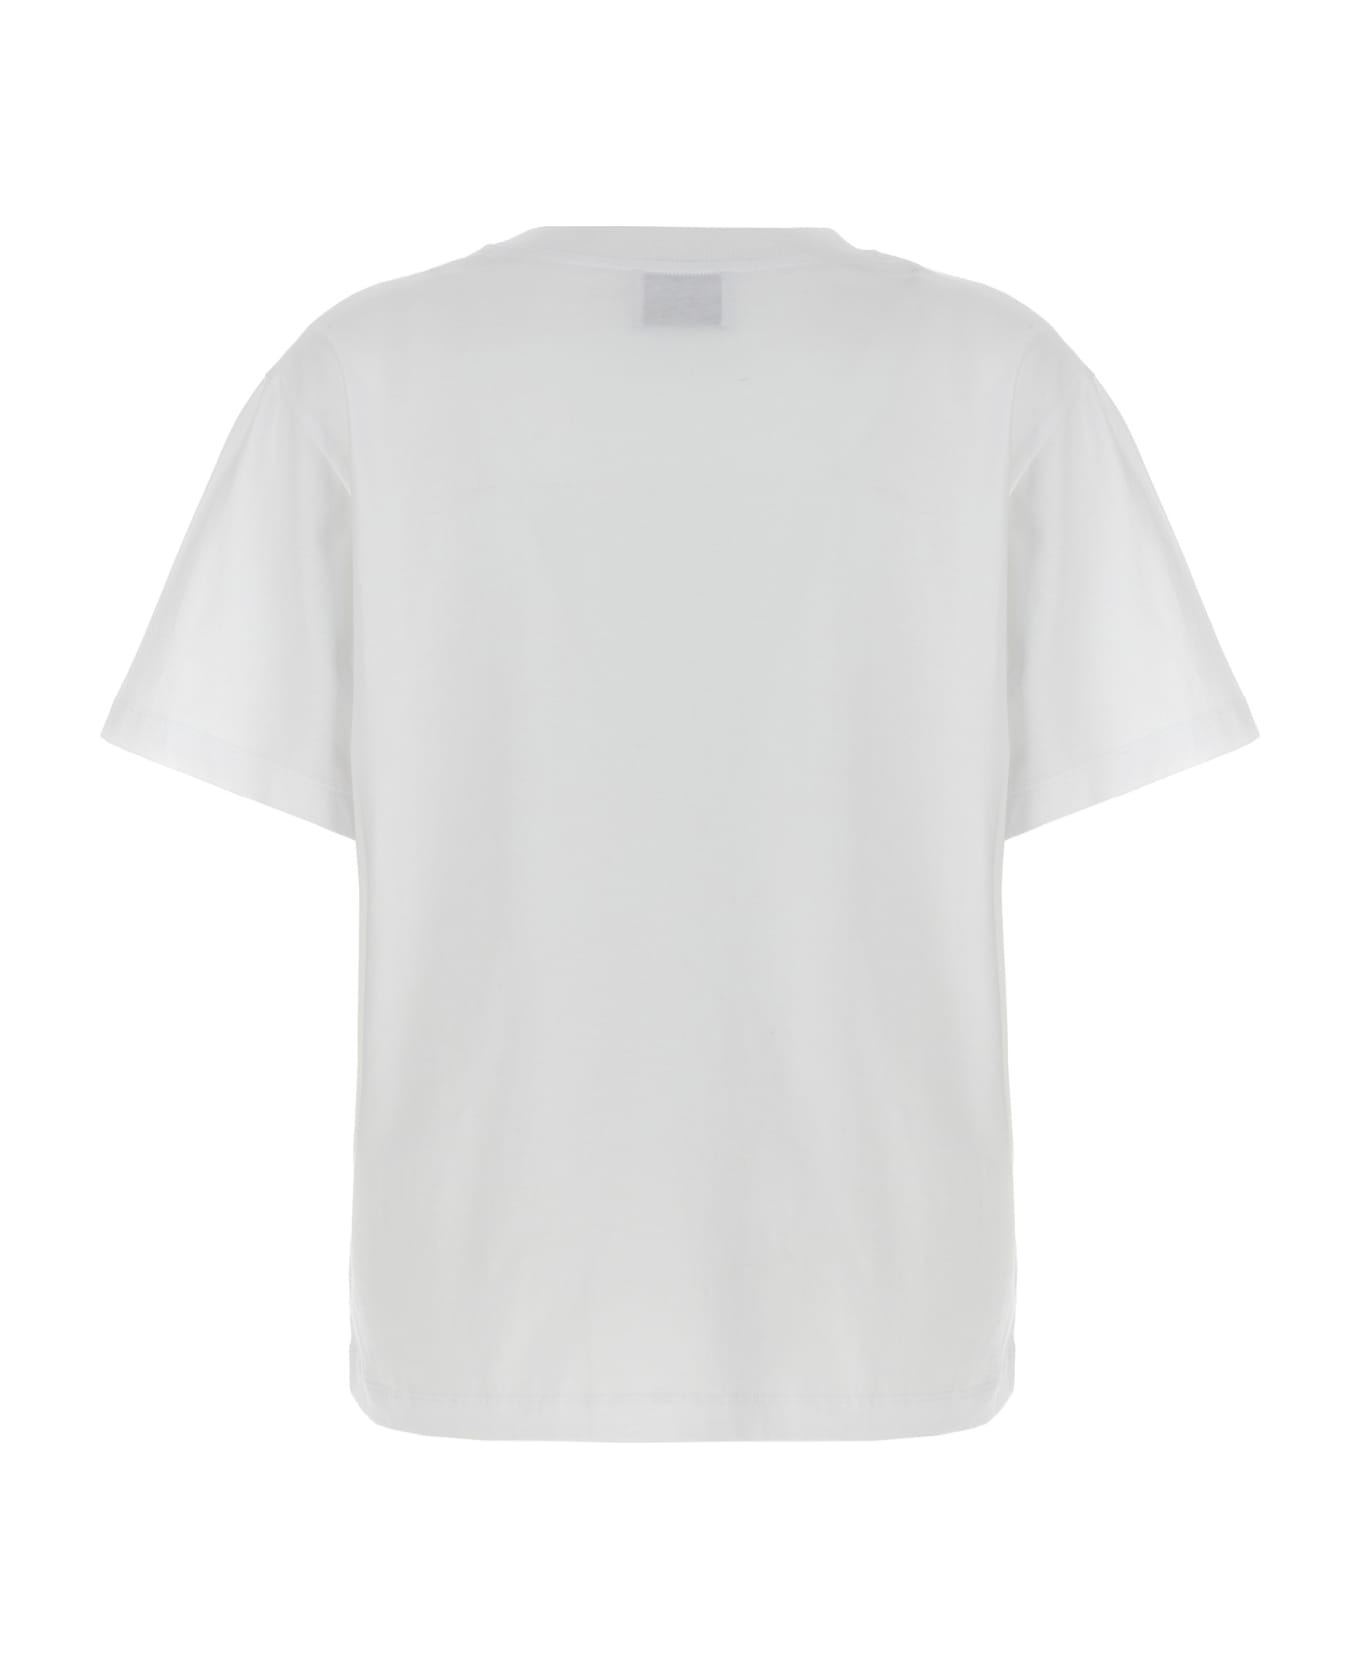 M05CH1N0 Jeans Logo T-shirt - White